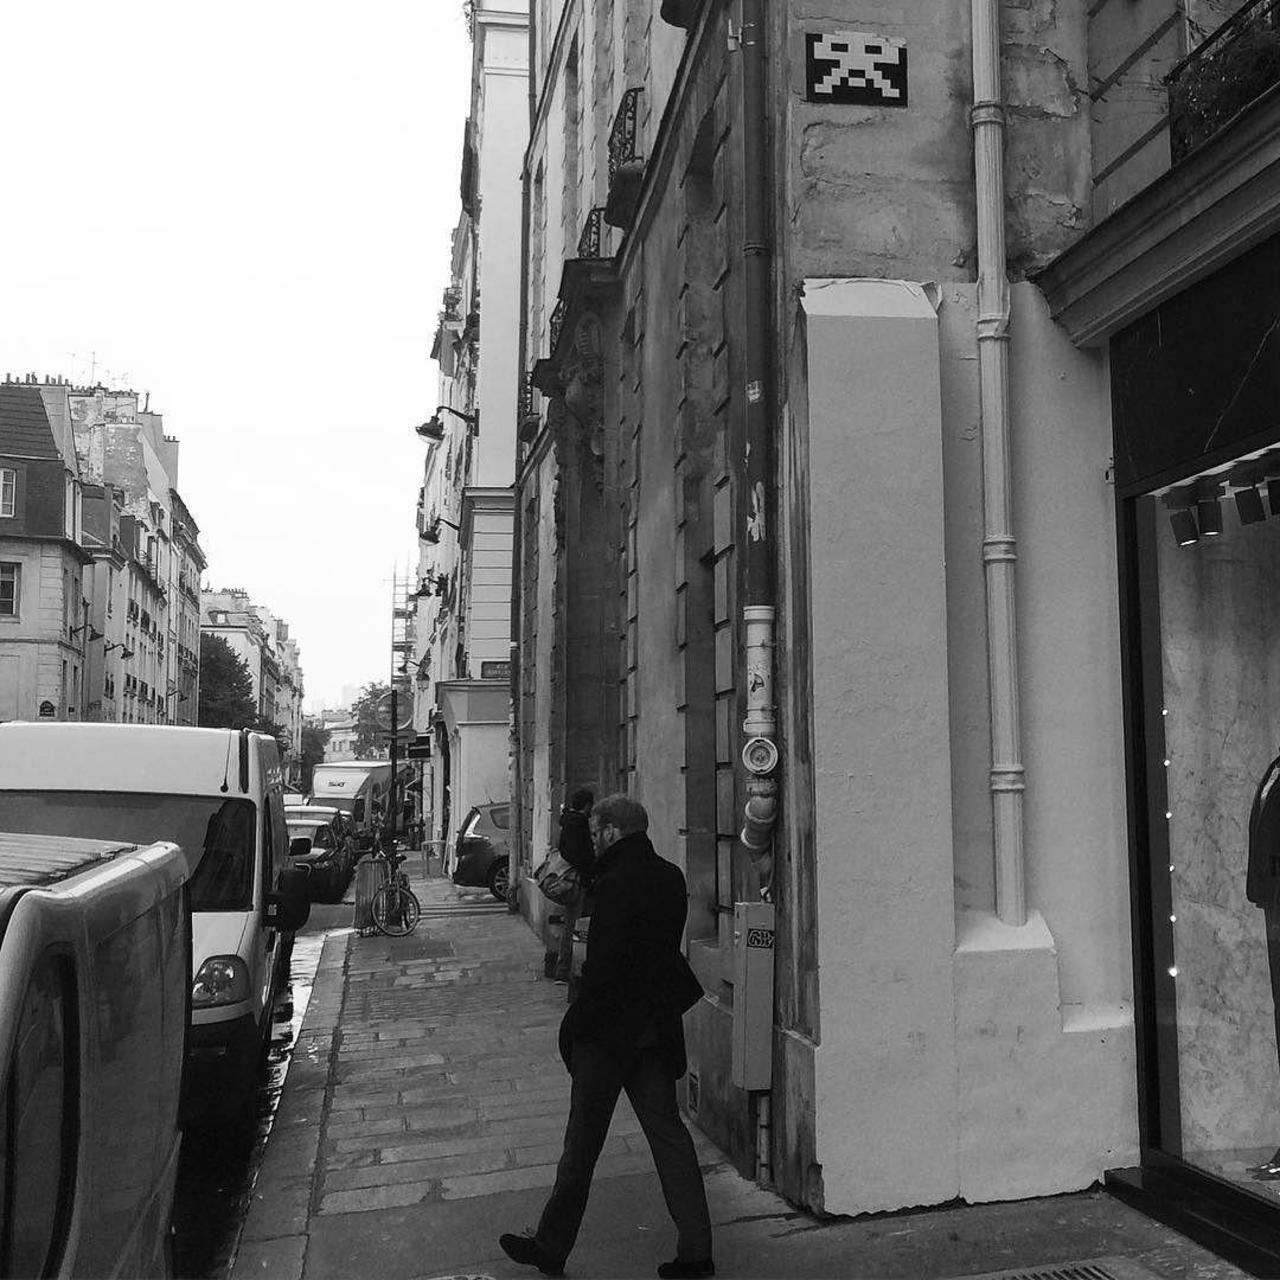 nycre8ivenative: RT circumjacent_fr: #Paris #graffiti photo by julienvermeulen http://ift.tt/1RFRUWX #StreetArt https://t.co/I6wQfdoOxu